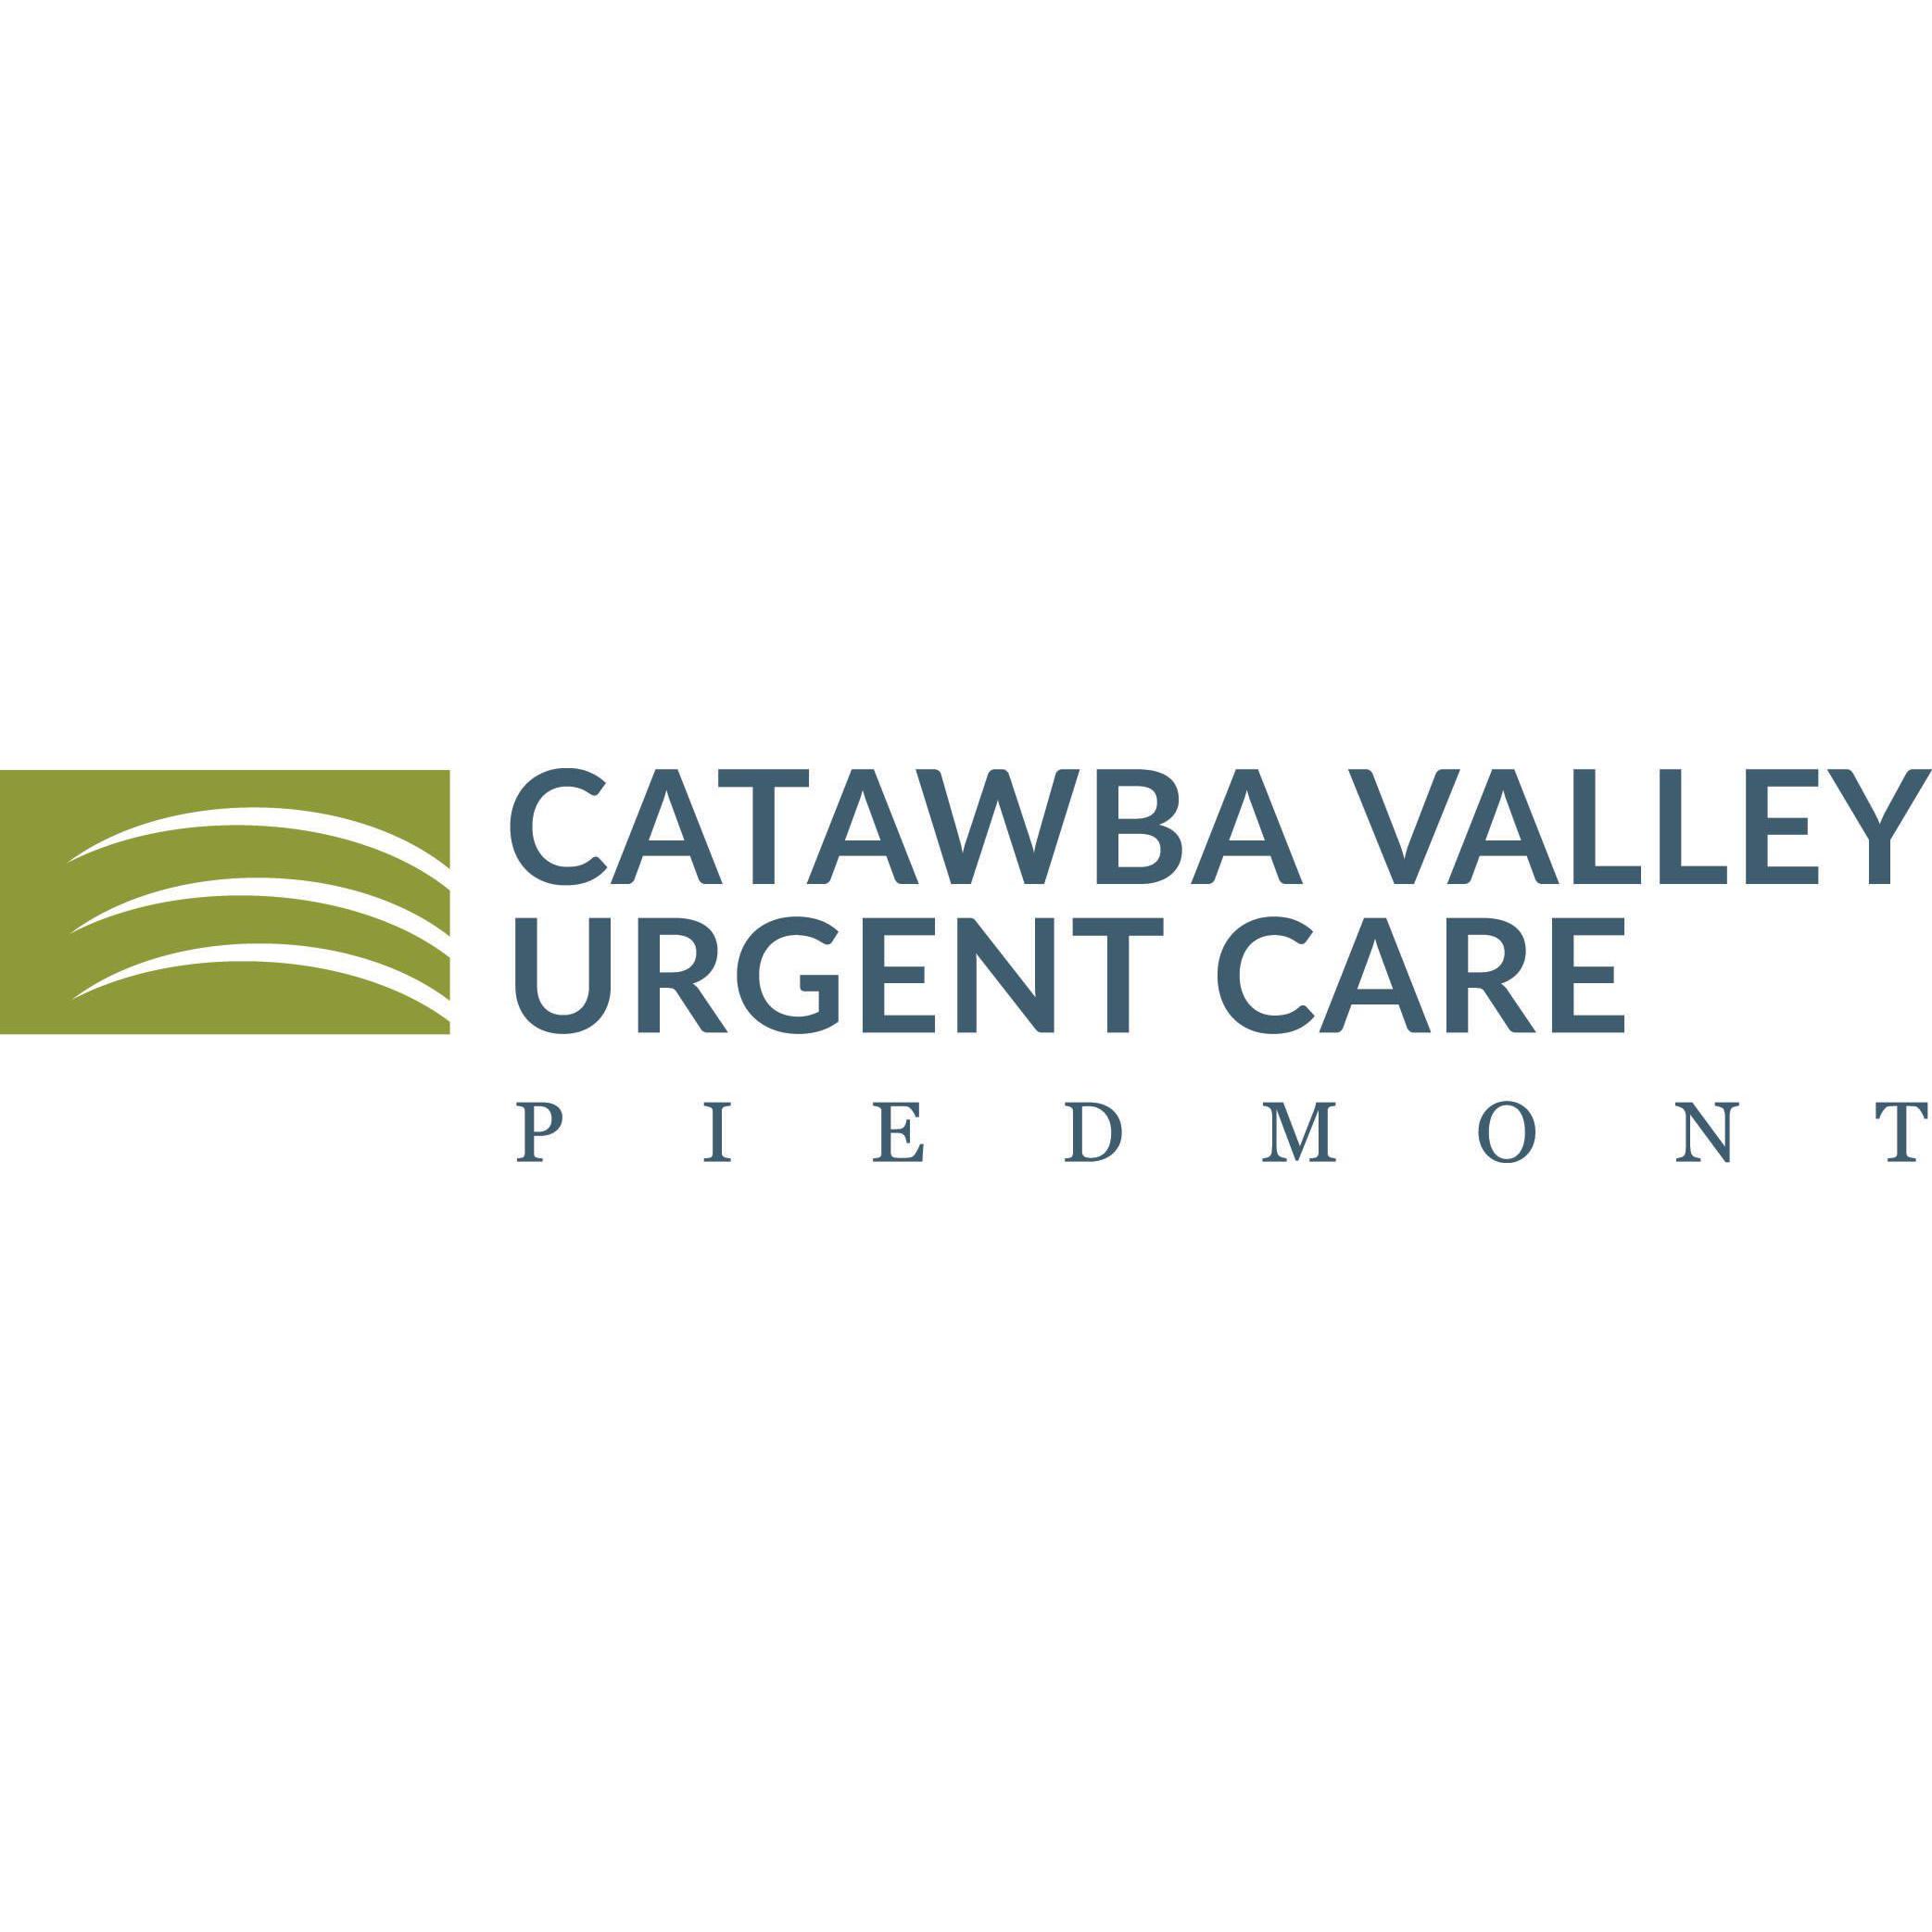 Catawba Valley Urgent Care - Piedmont - Hickory, NC 28601 - (828)431-4955 | ShowMeLocal.com